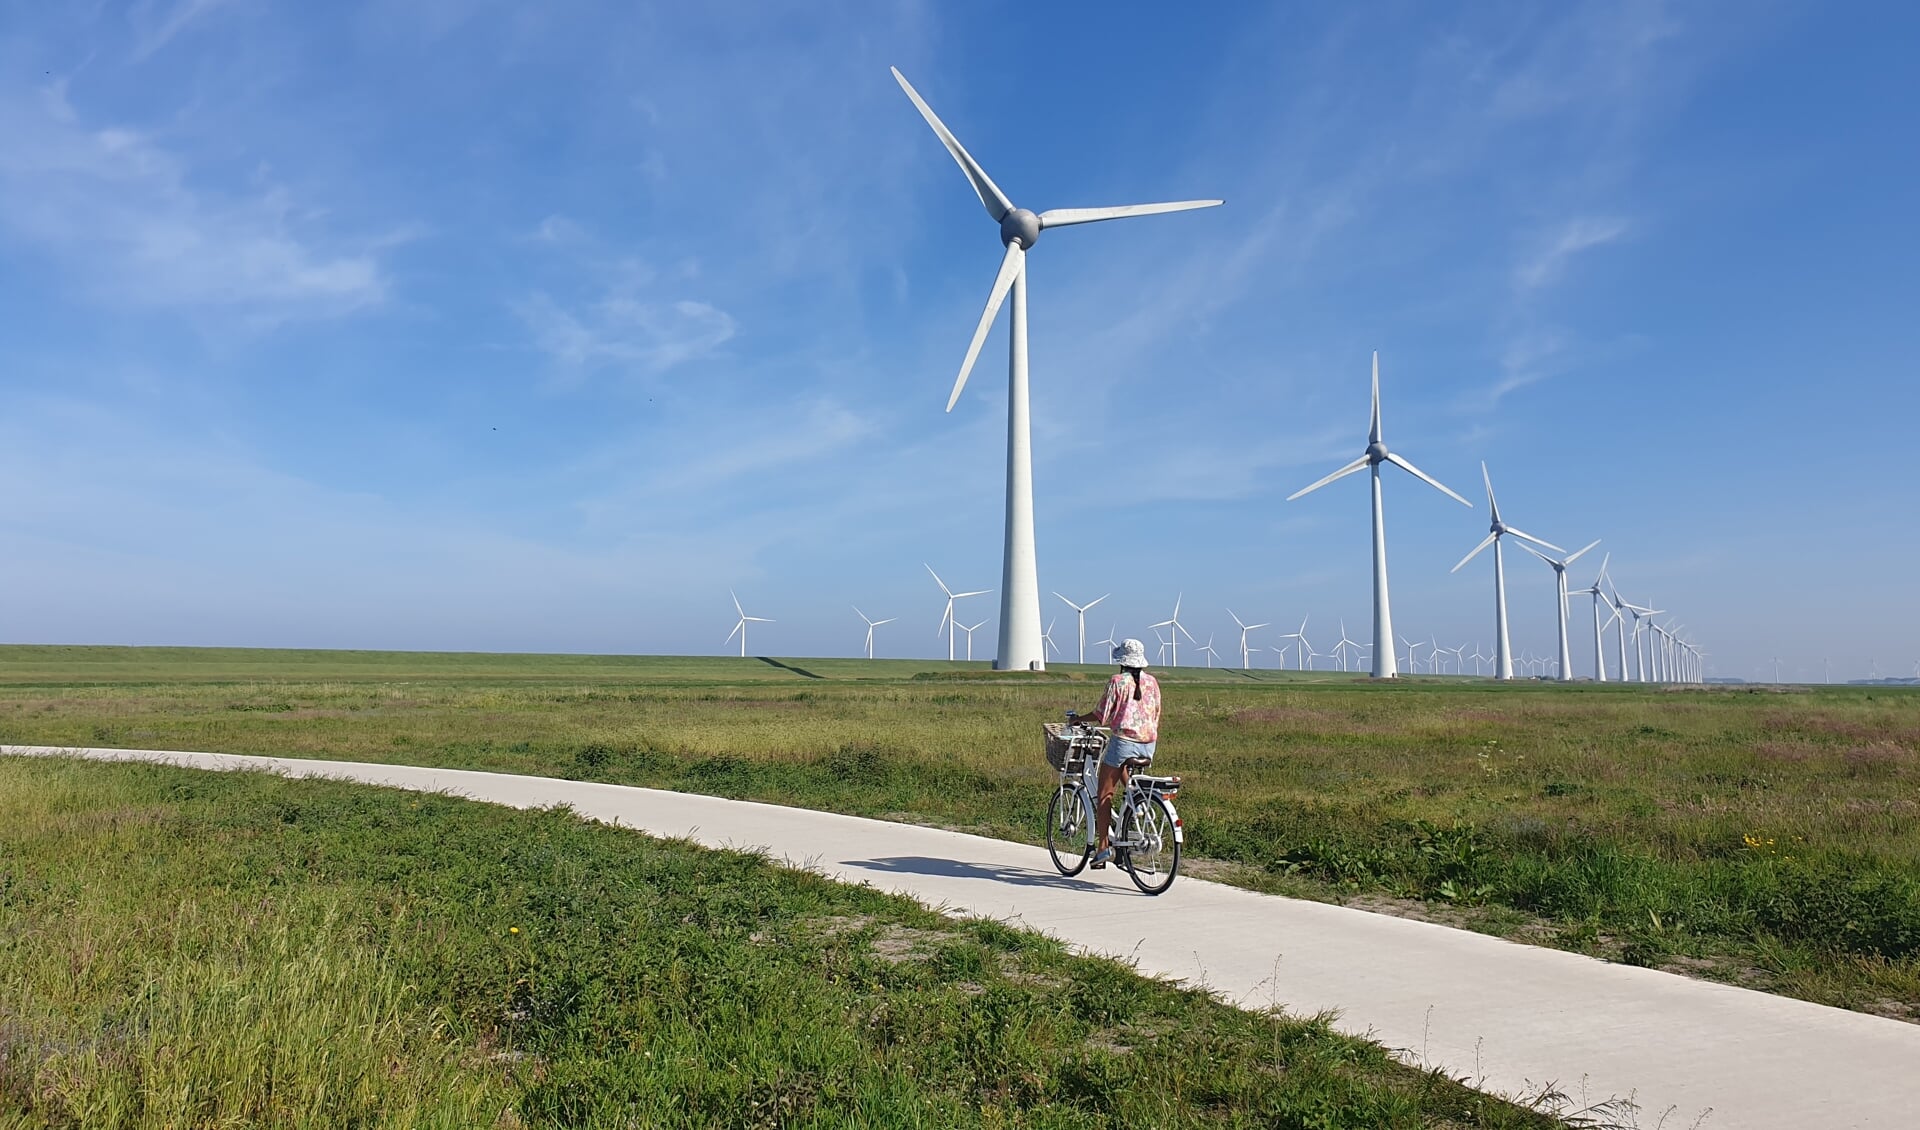 De plannen voor plaatsing van windmolens leveren veel weerstand op in de regio. Ook rondom Borne zijn er inmiddels diverse plannen voor plaatsing van windmolens.